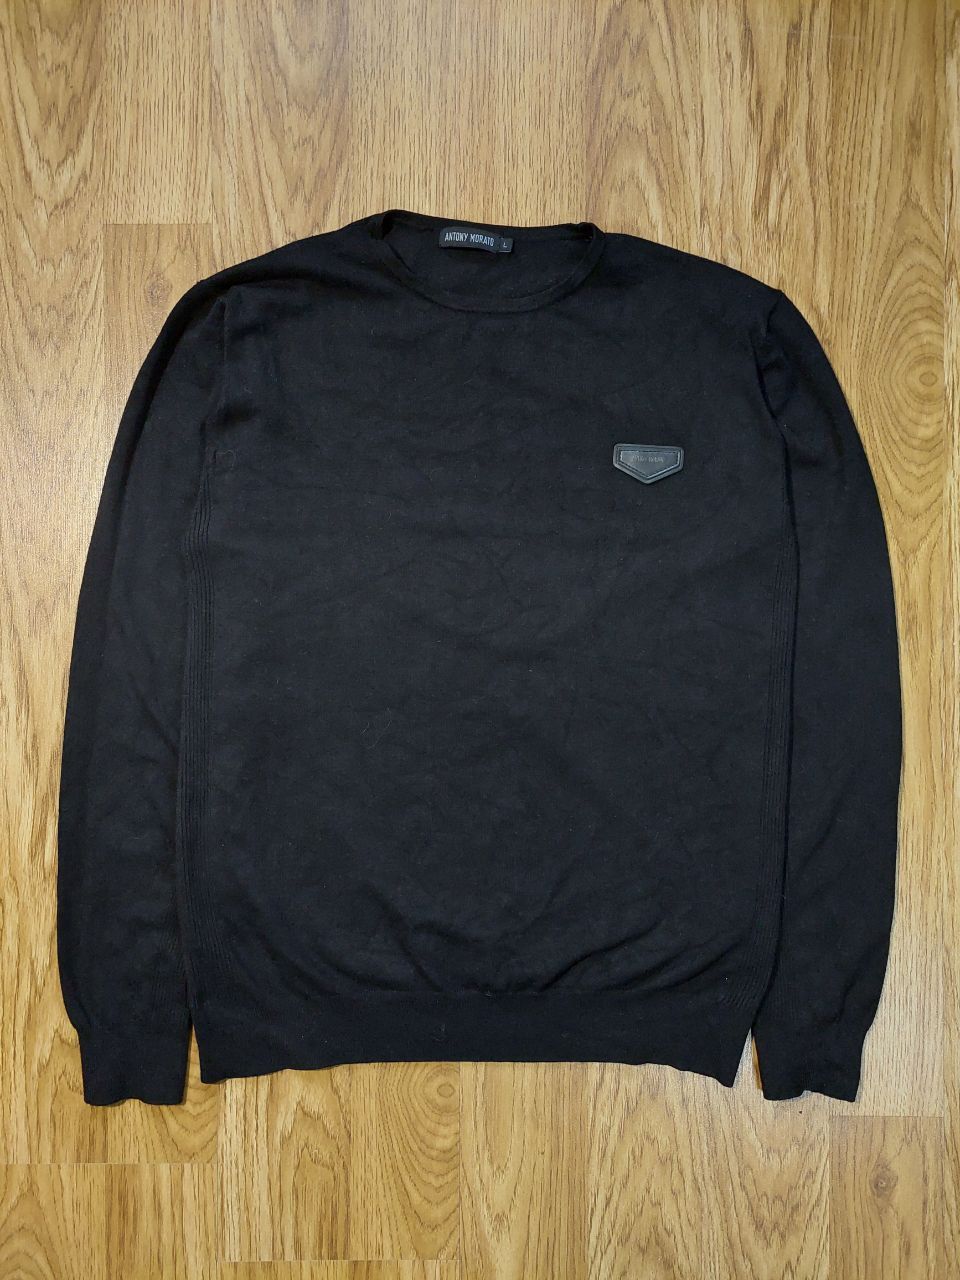 Pre-owned Antony Morato Sweater Size L In Black